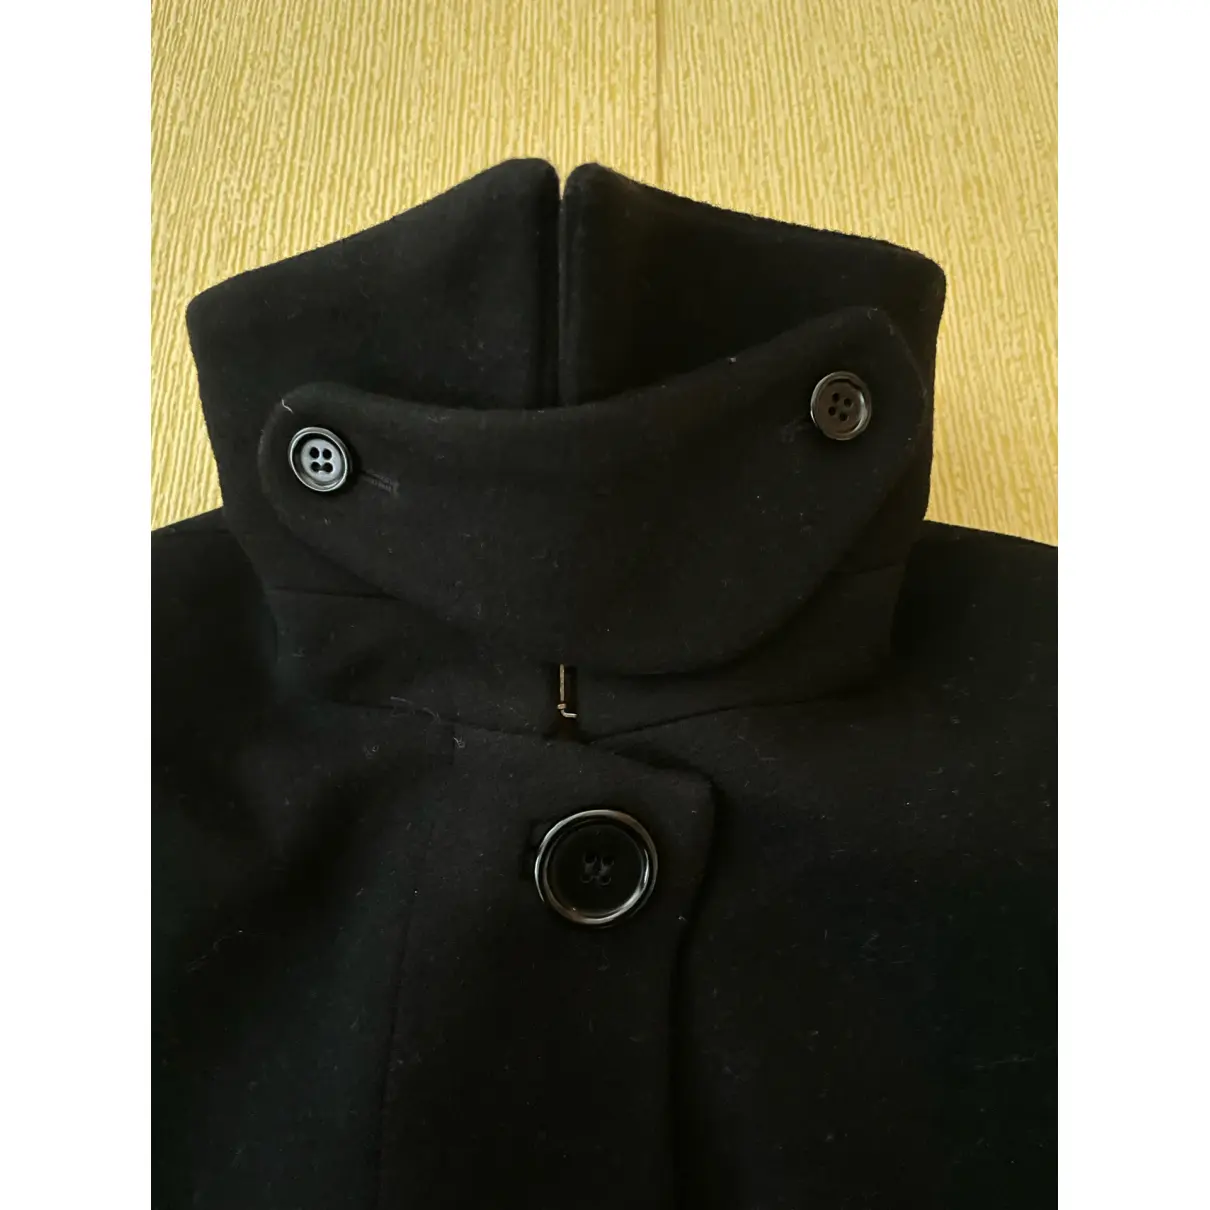 Buy Mads Nørgaard Wool coat online